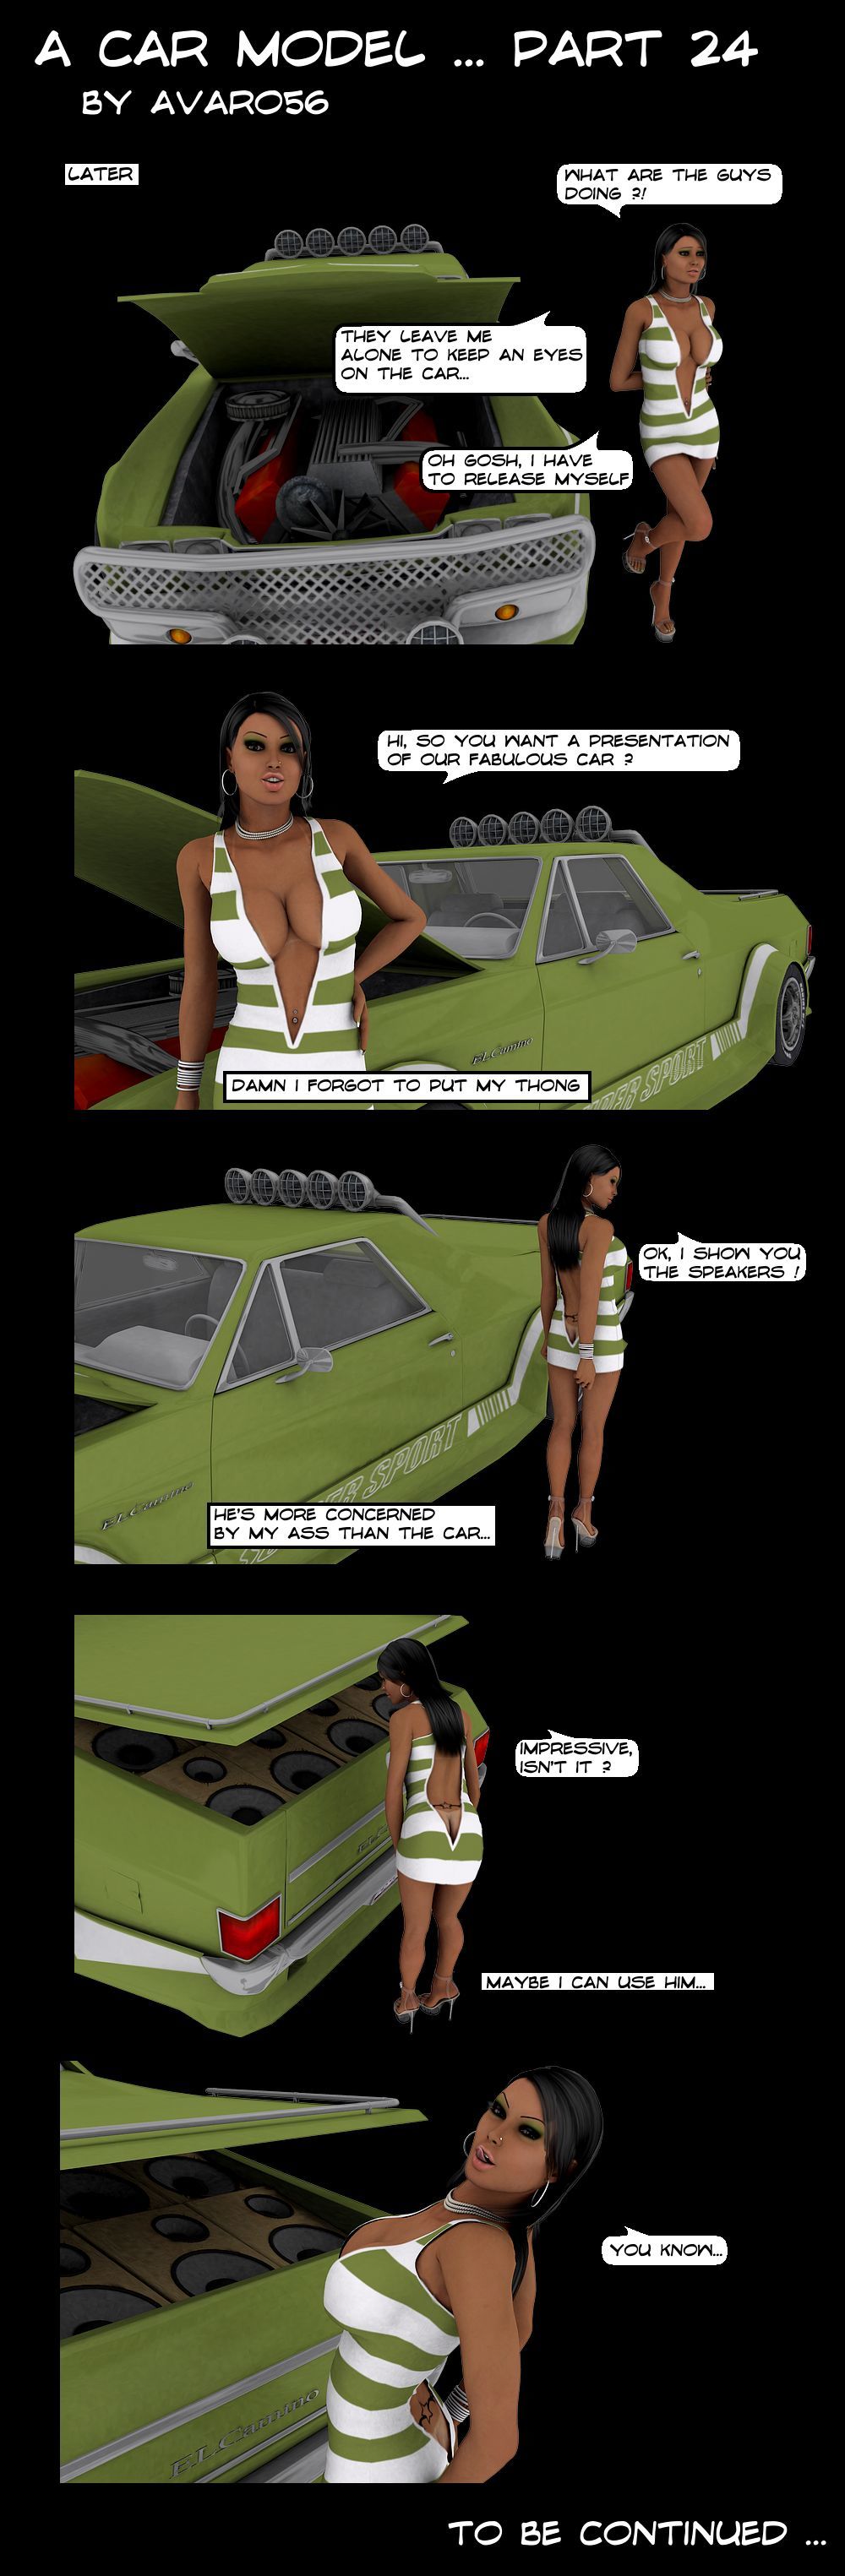 bir araba Model - PART 2